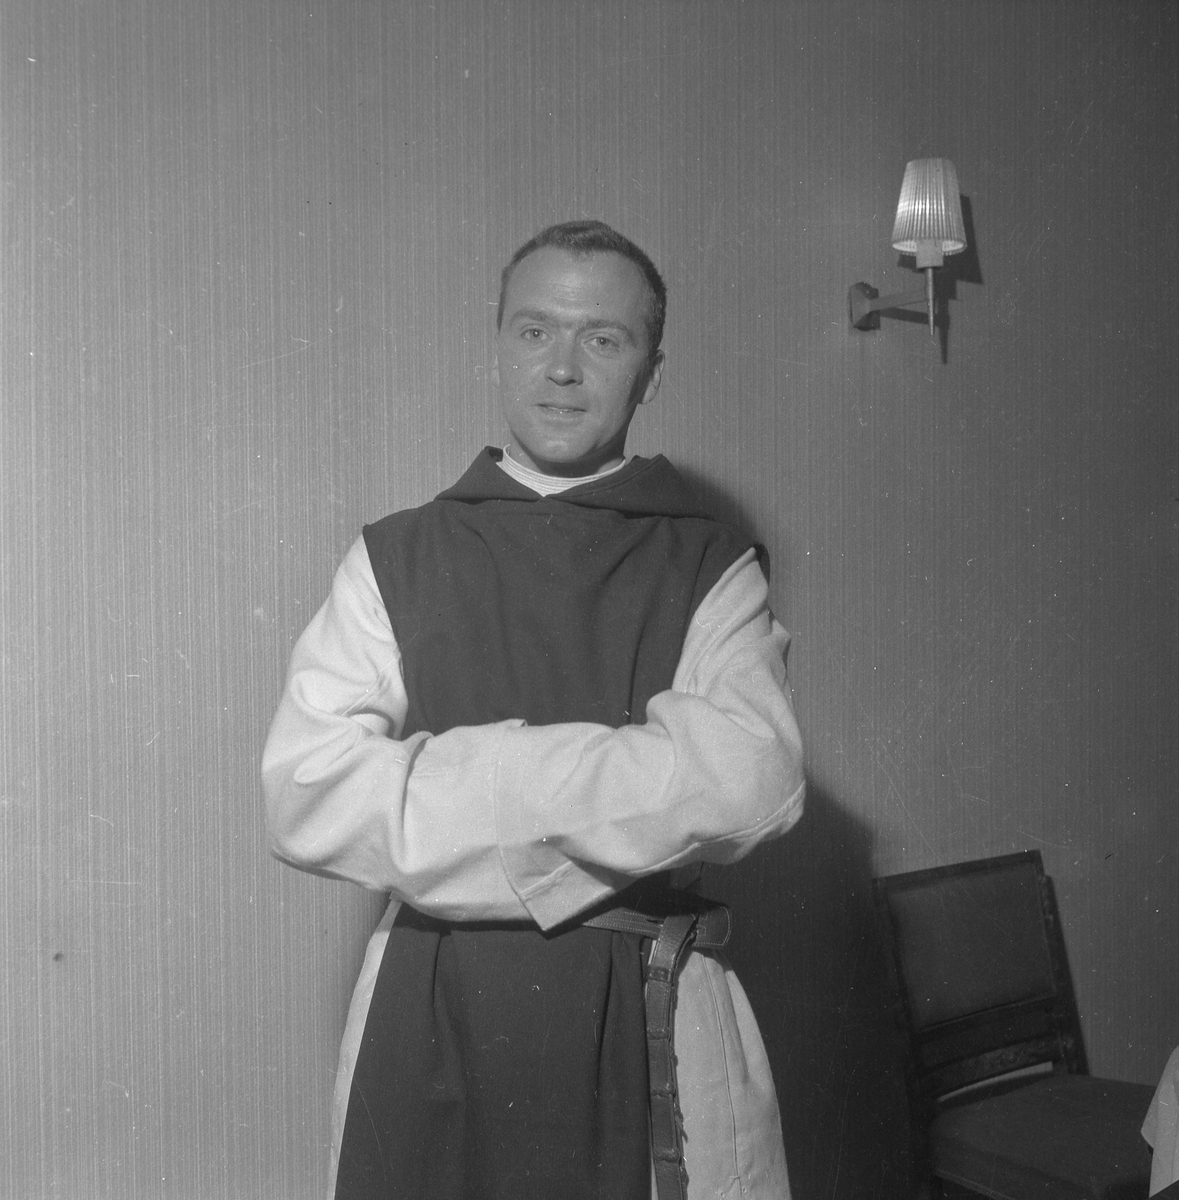 Kirkejubileet 1953. Fest for katolikker i Handelsstanden